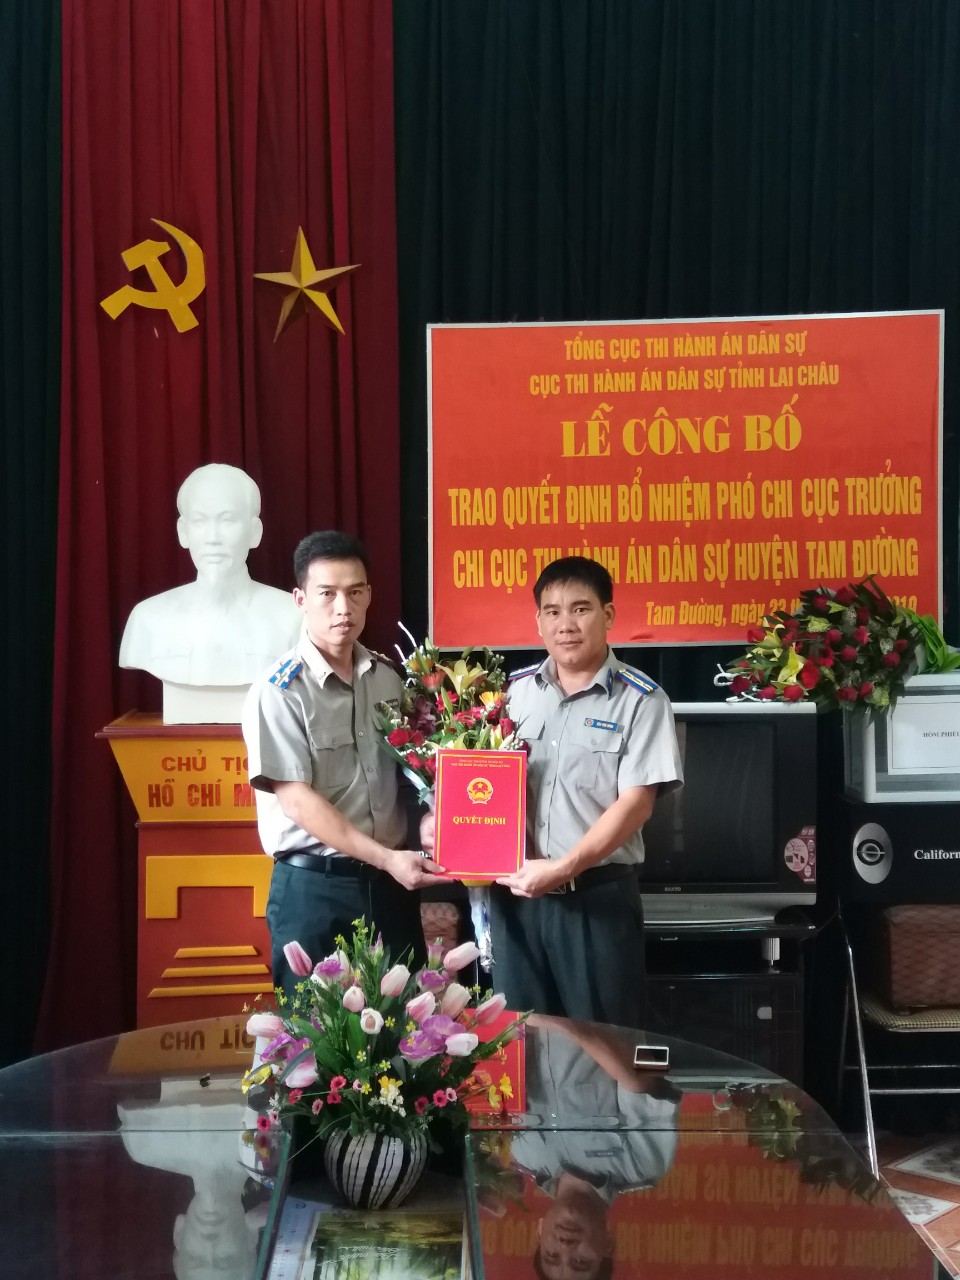 Cục Thi hành án dân sự tỉnh Lai Châu đã tổ chức Lễ công bố và trao Quyết định bổ nhiệm Phó chi cục trưởng Chi cục Thi hành án dân sự huyện Tam Đường, tỉnh Lai Châu